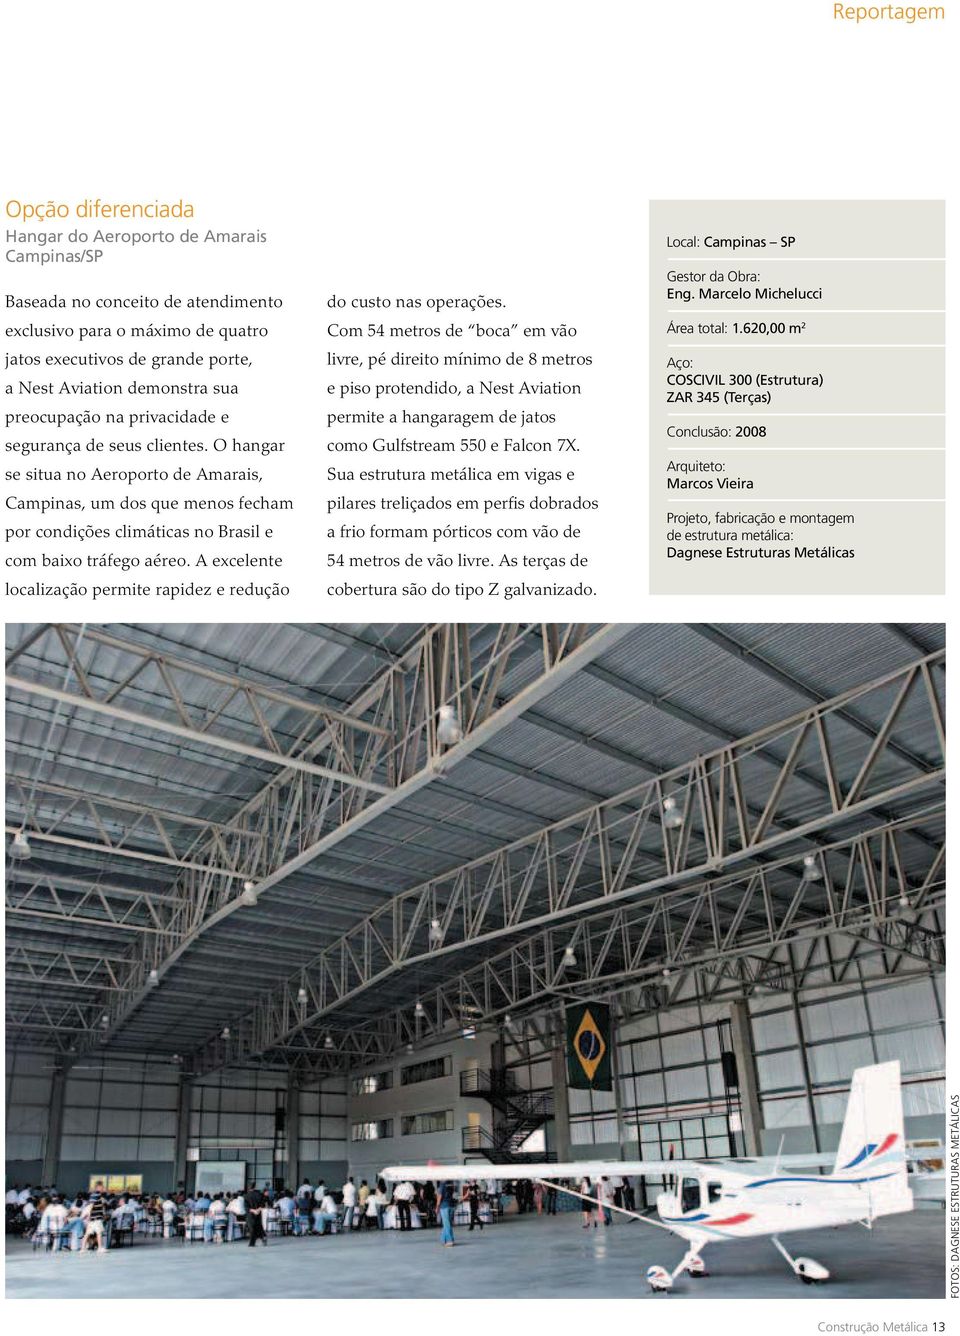 O hangar se situa no Aeroporto de Amarais, Campinas, um dos que menos fecham por condições climáticas no Brasil e com baixo tráfego aéreo.